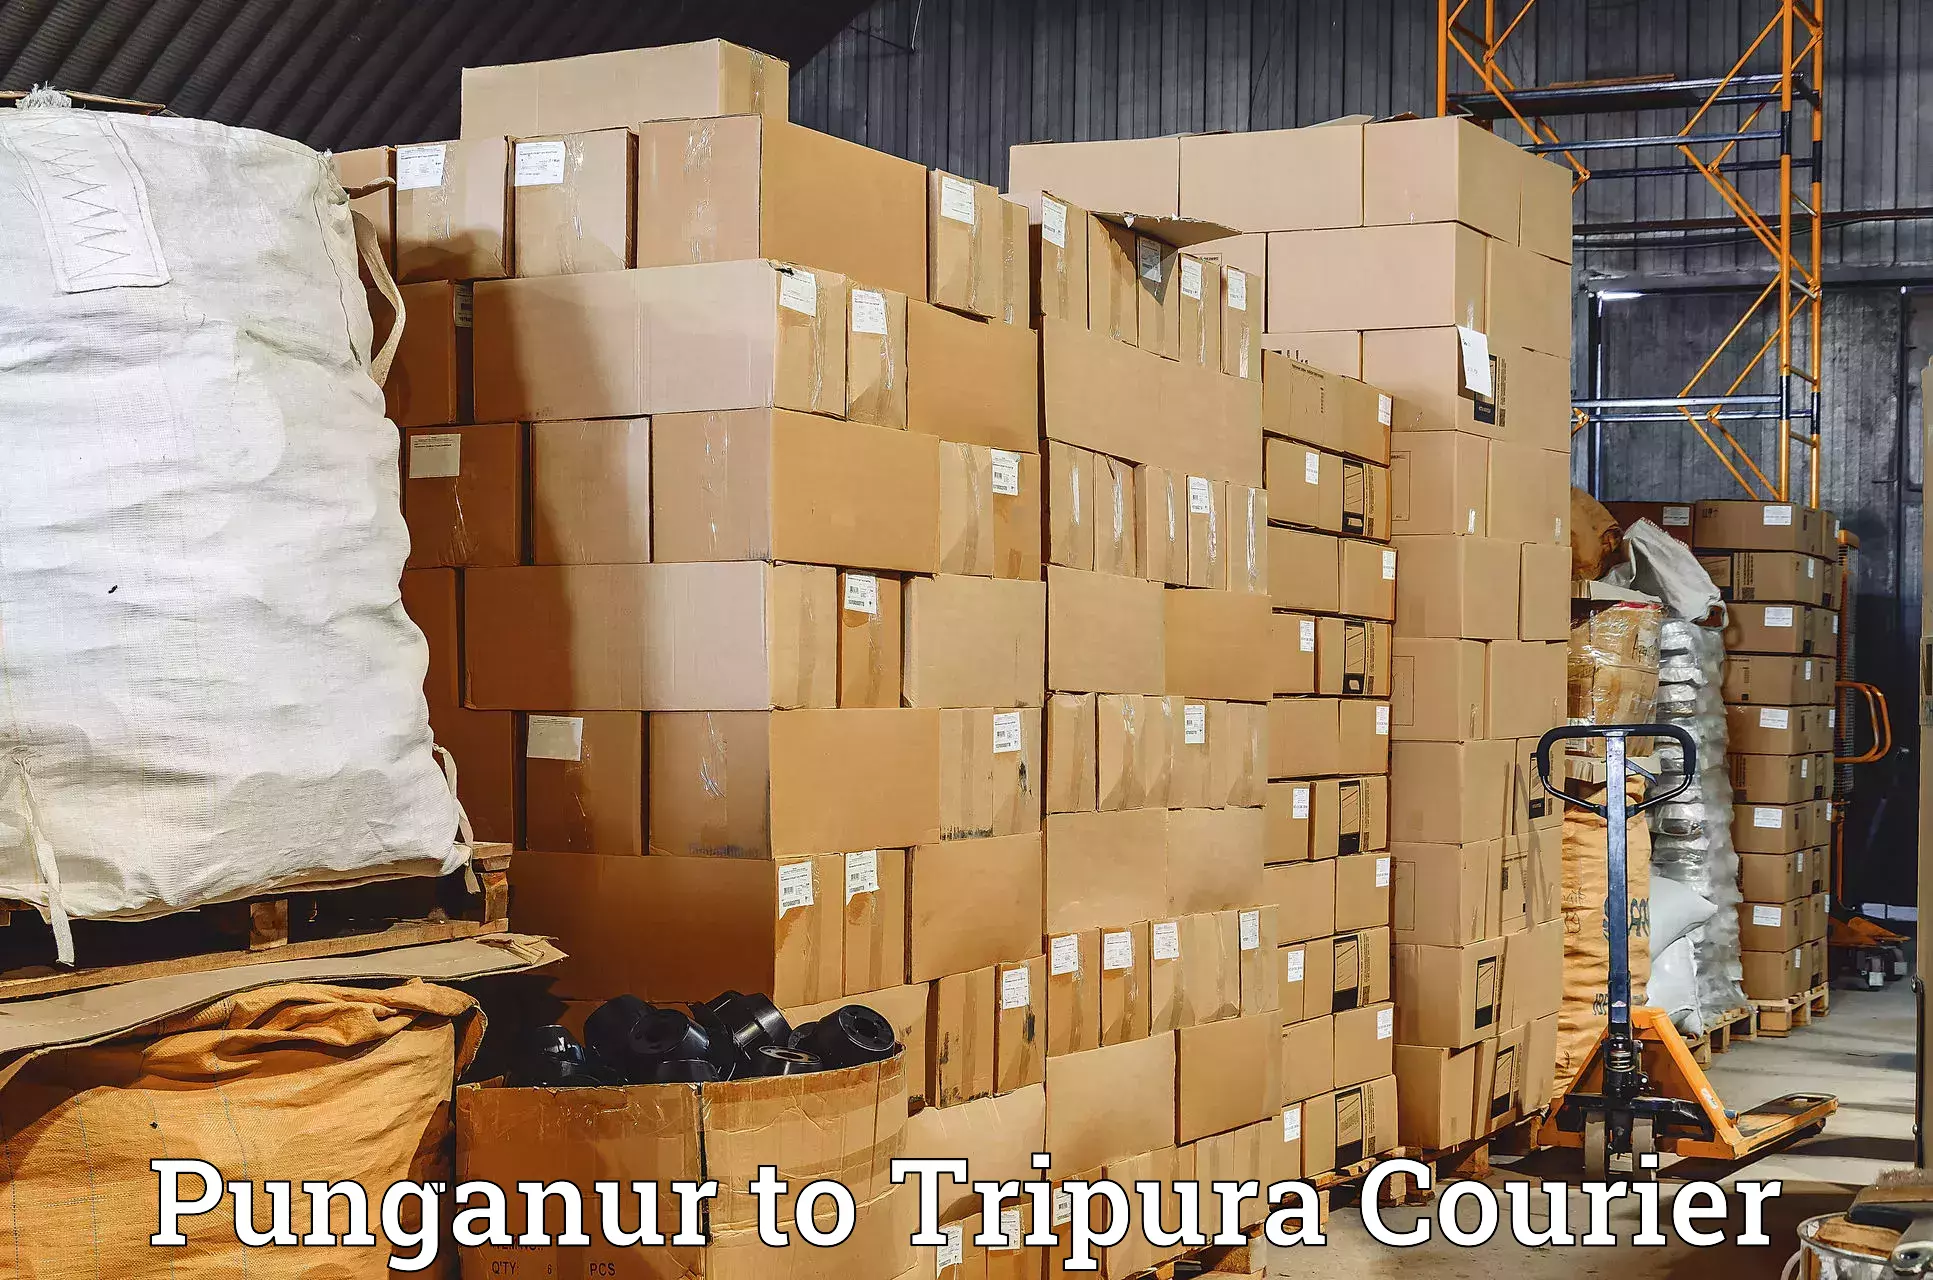 Professional courier handling Punganur to Dhalai